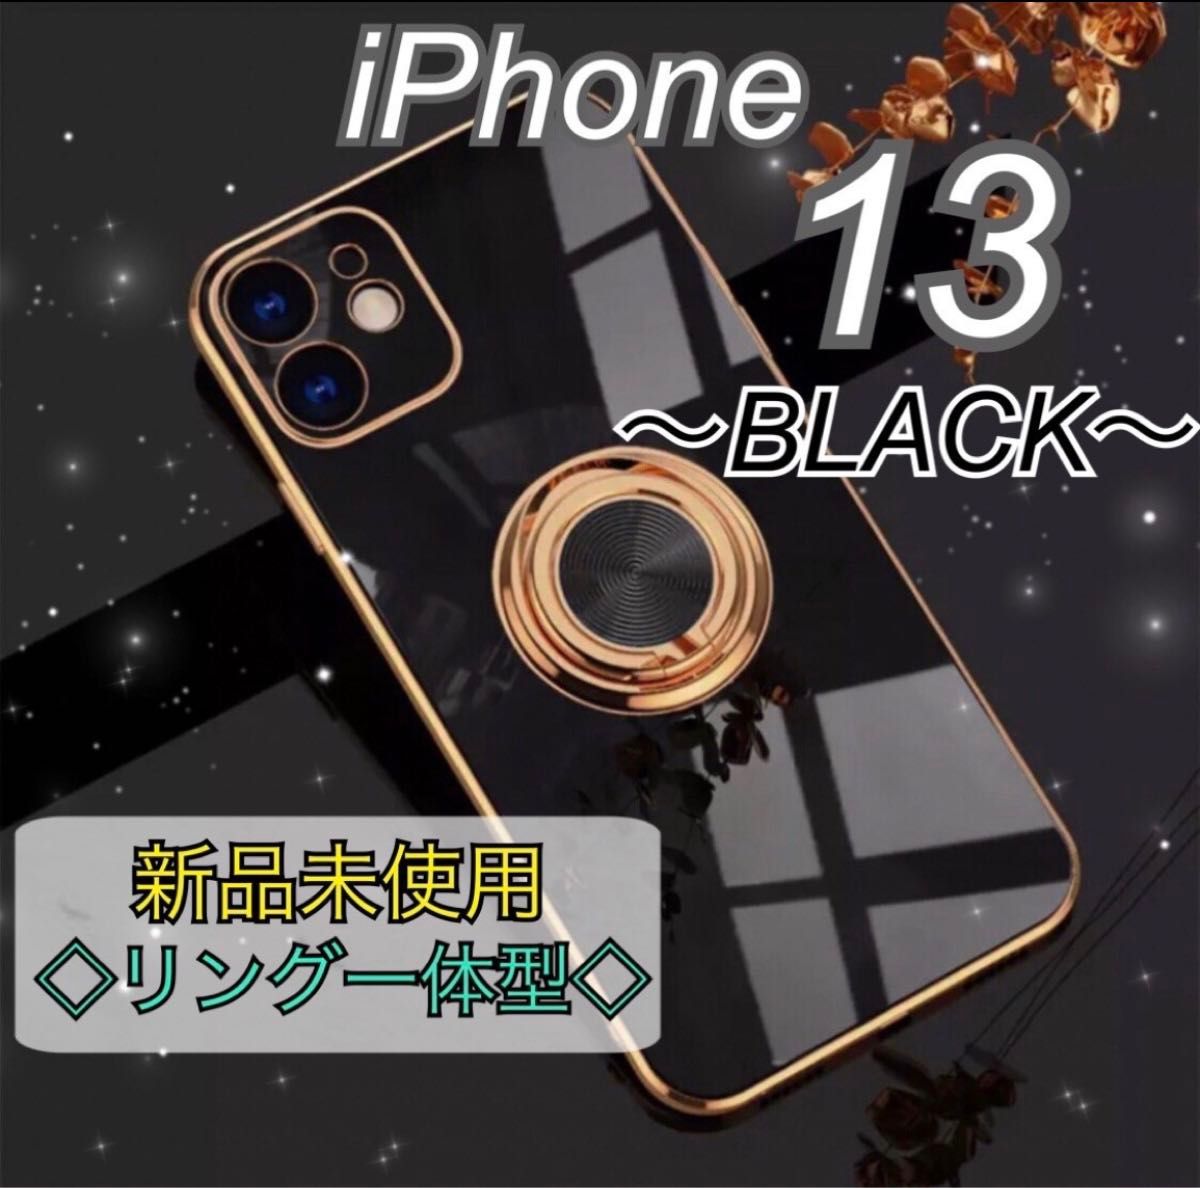 リング付きiPhoneケース iPhone13 黒 ブラック 韓国 高級感